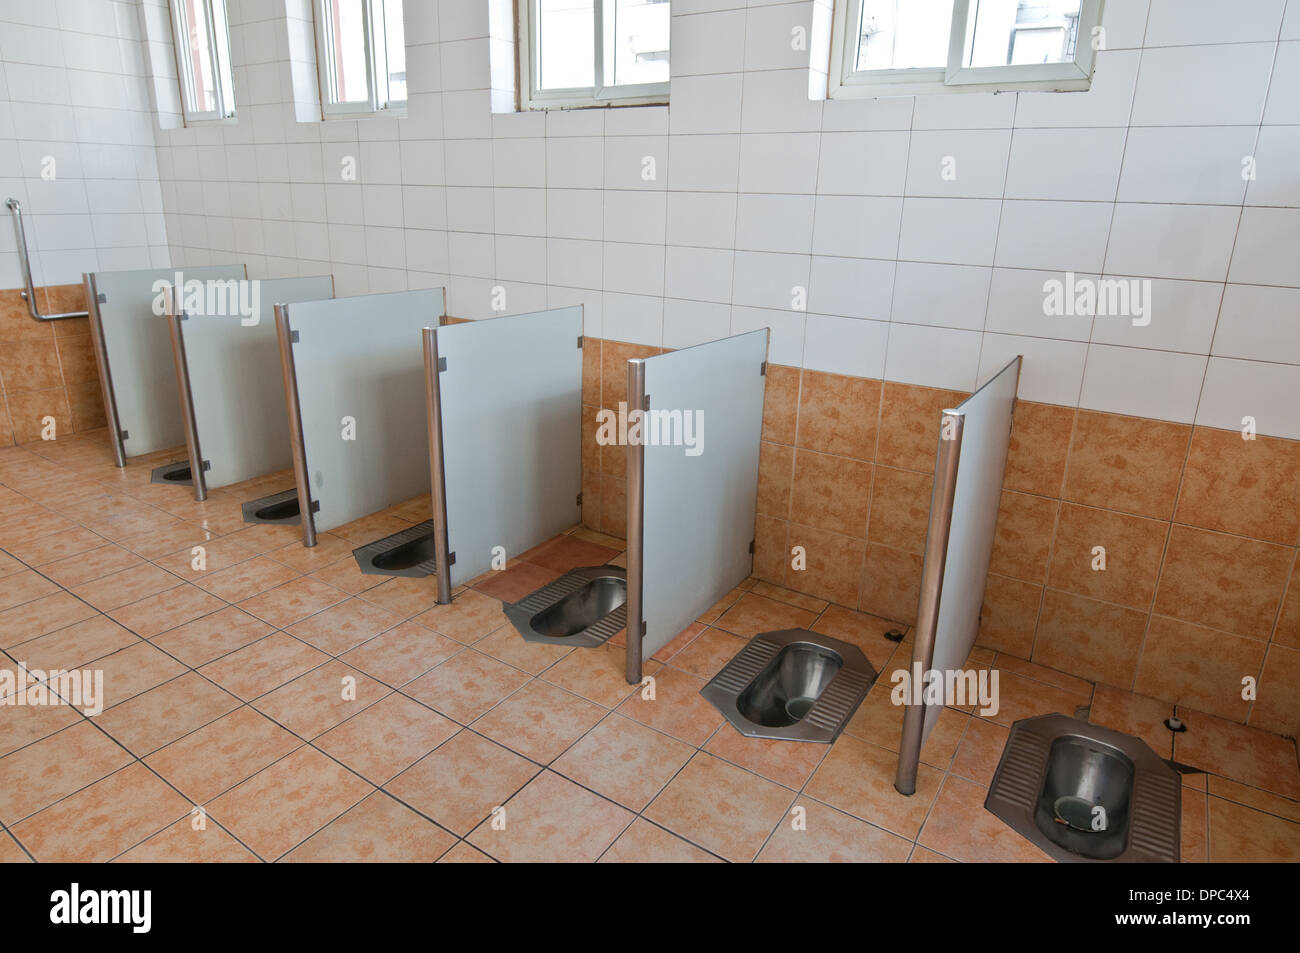 Toilettes publiques à Pékin, Chine Banque D'Images